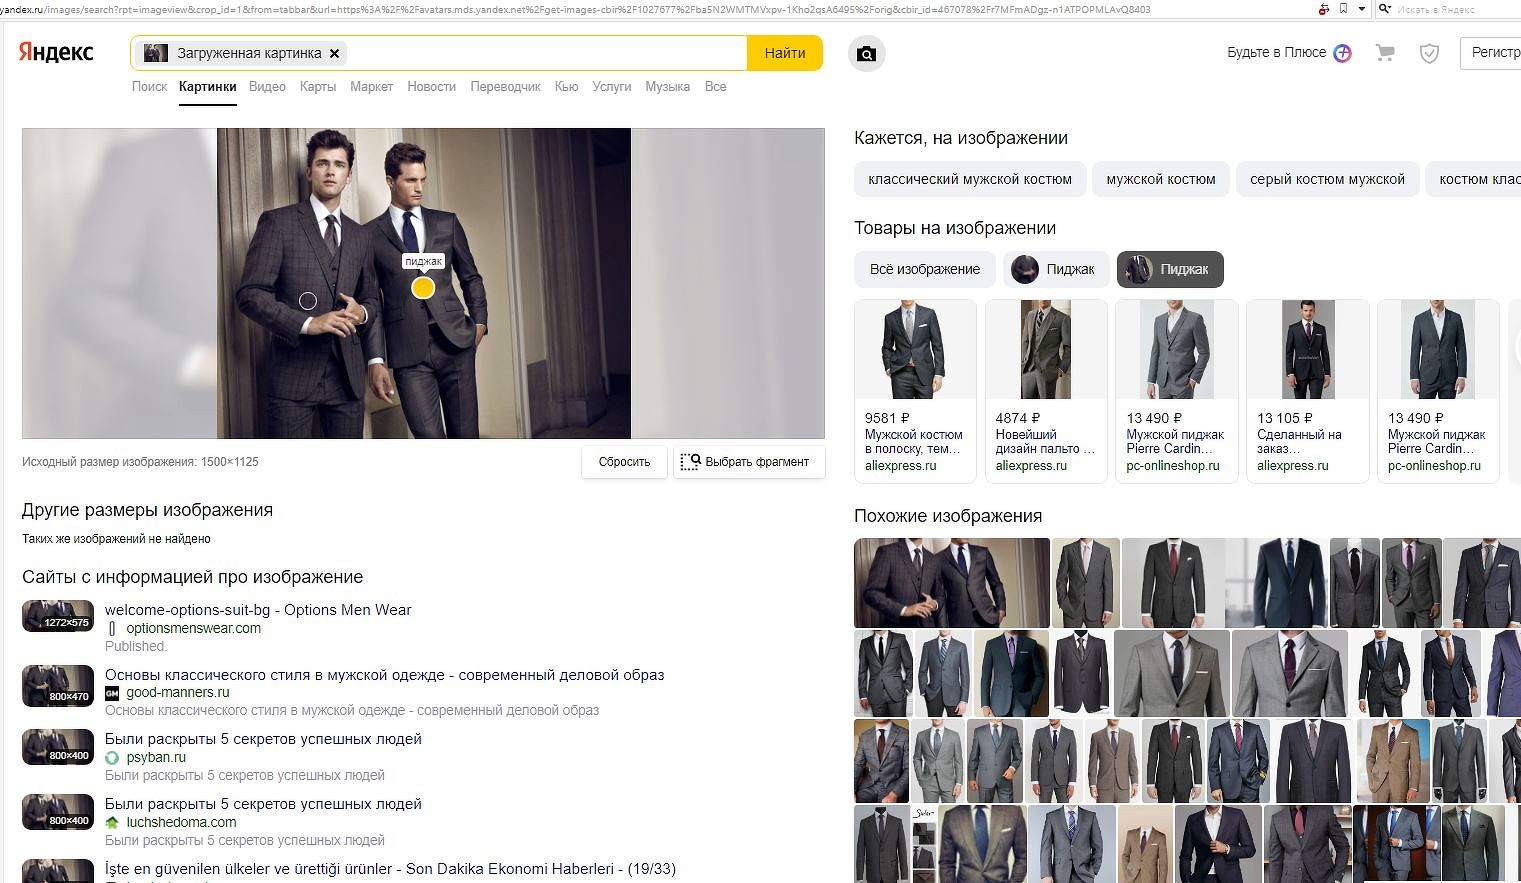 Яндекс» научился искать товары на фото - CNews